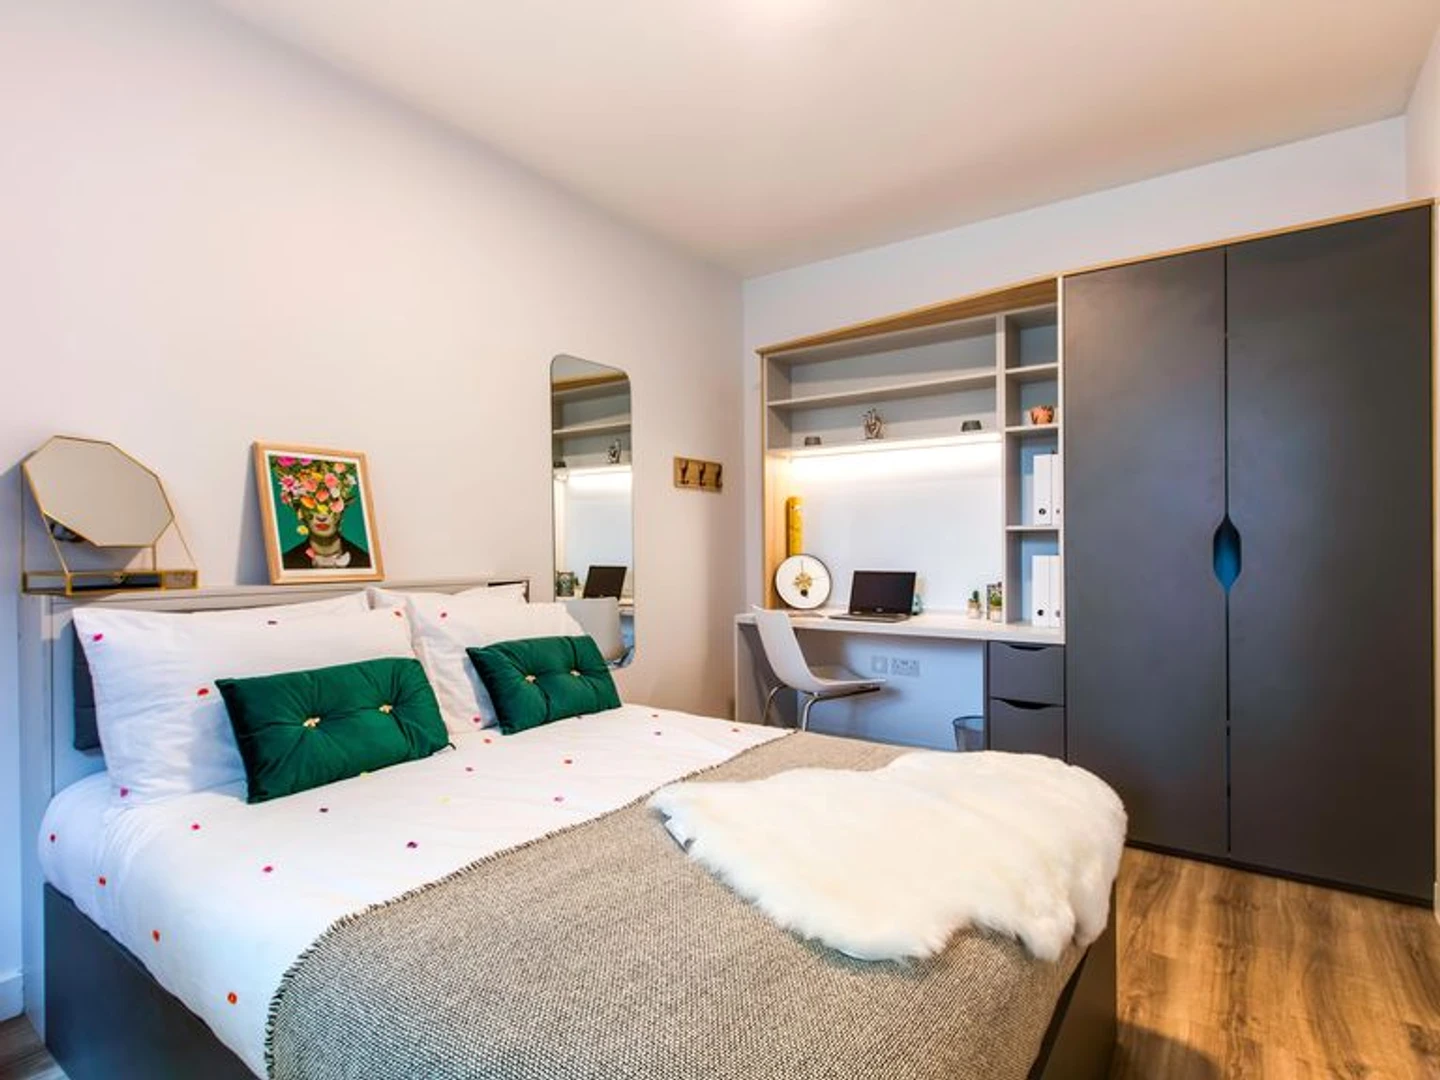 Alquiler de habitación en piso compartido en Dublín